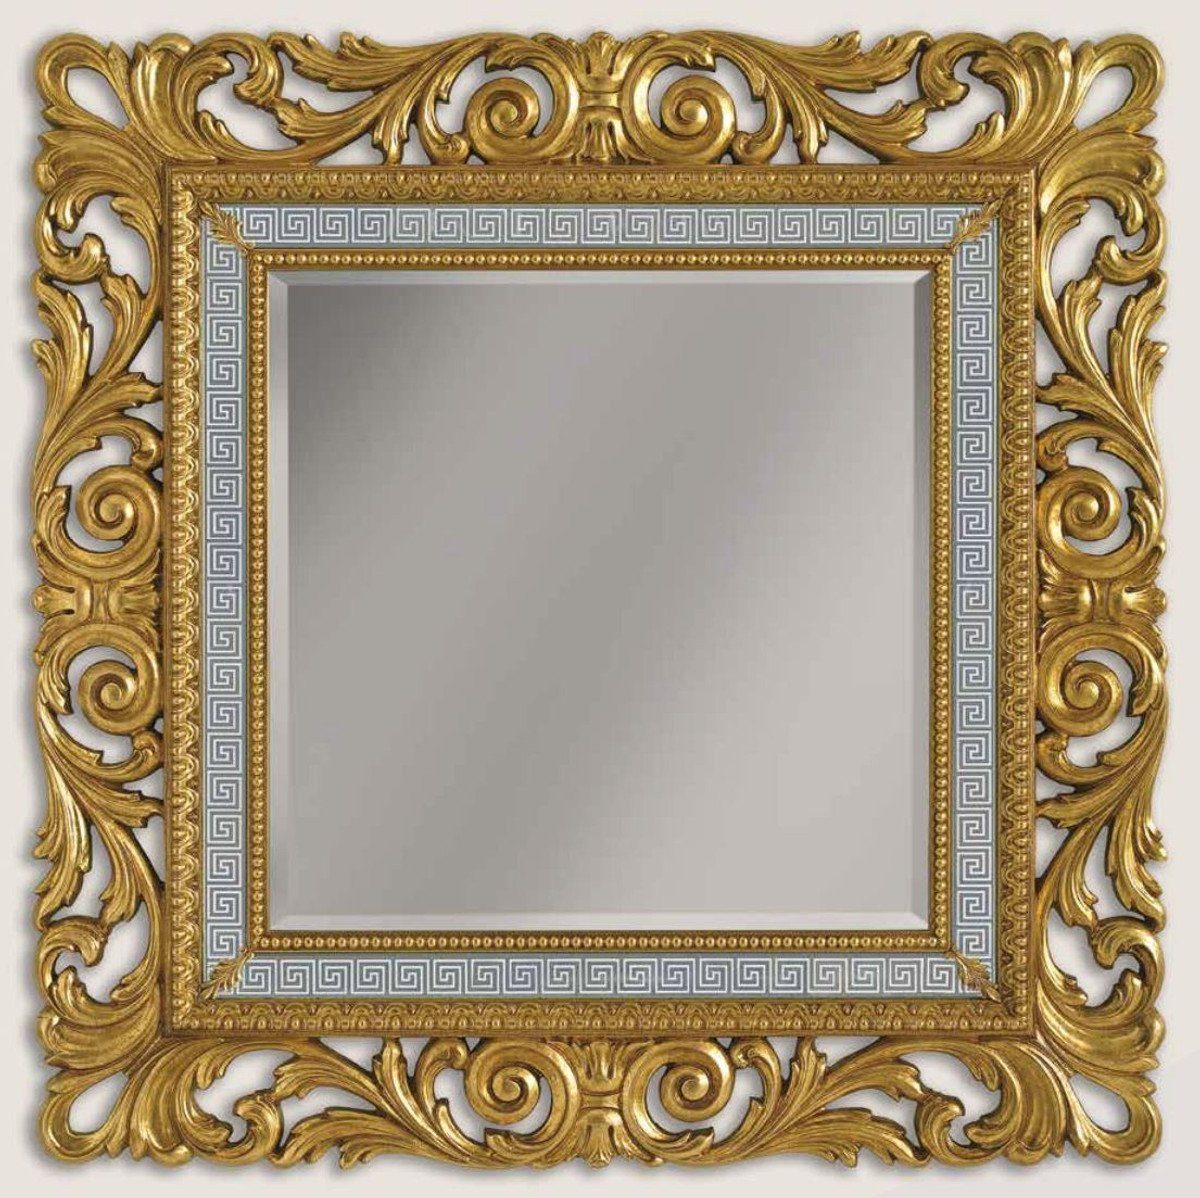 - - Italy Barockstil im Barockspiegel / Barock Möbel Luxus Weiß - Padrino Luxus Spiegel Qualität / Handgefertigter Casa in Grau Made - Gold Barock Wandspiegel